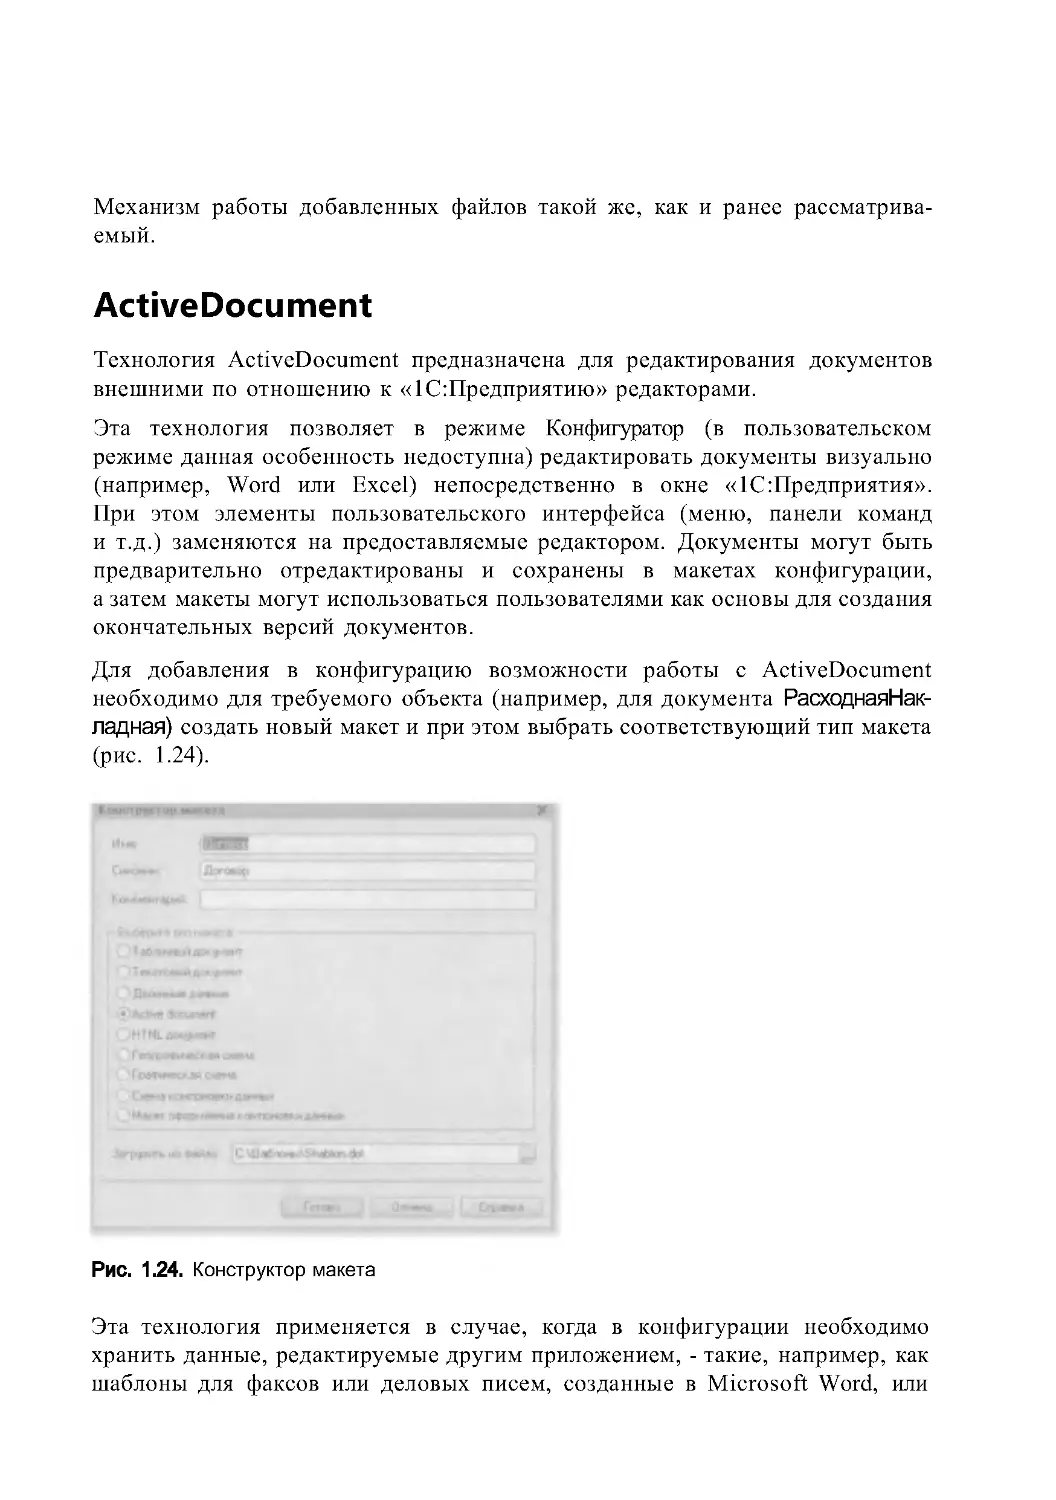 ActiveDocument